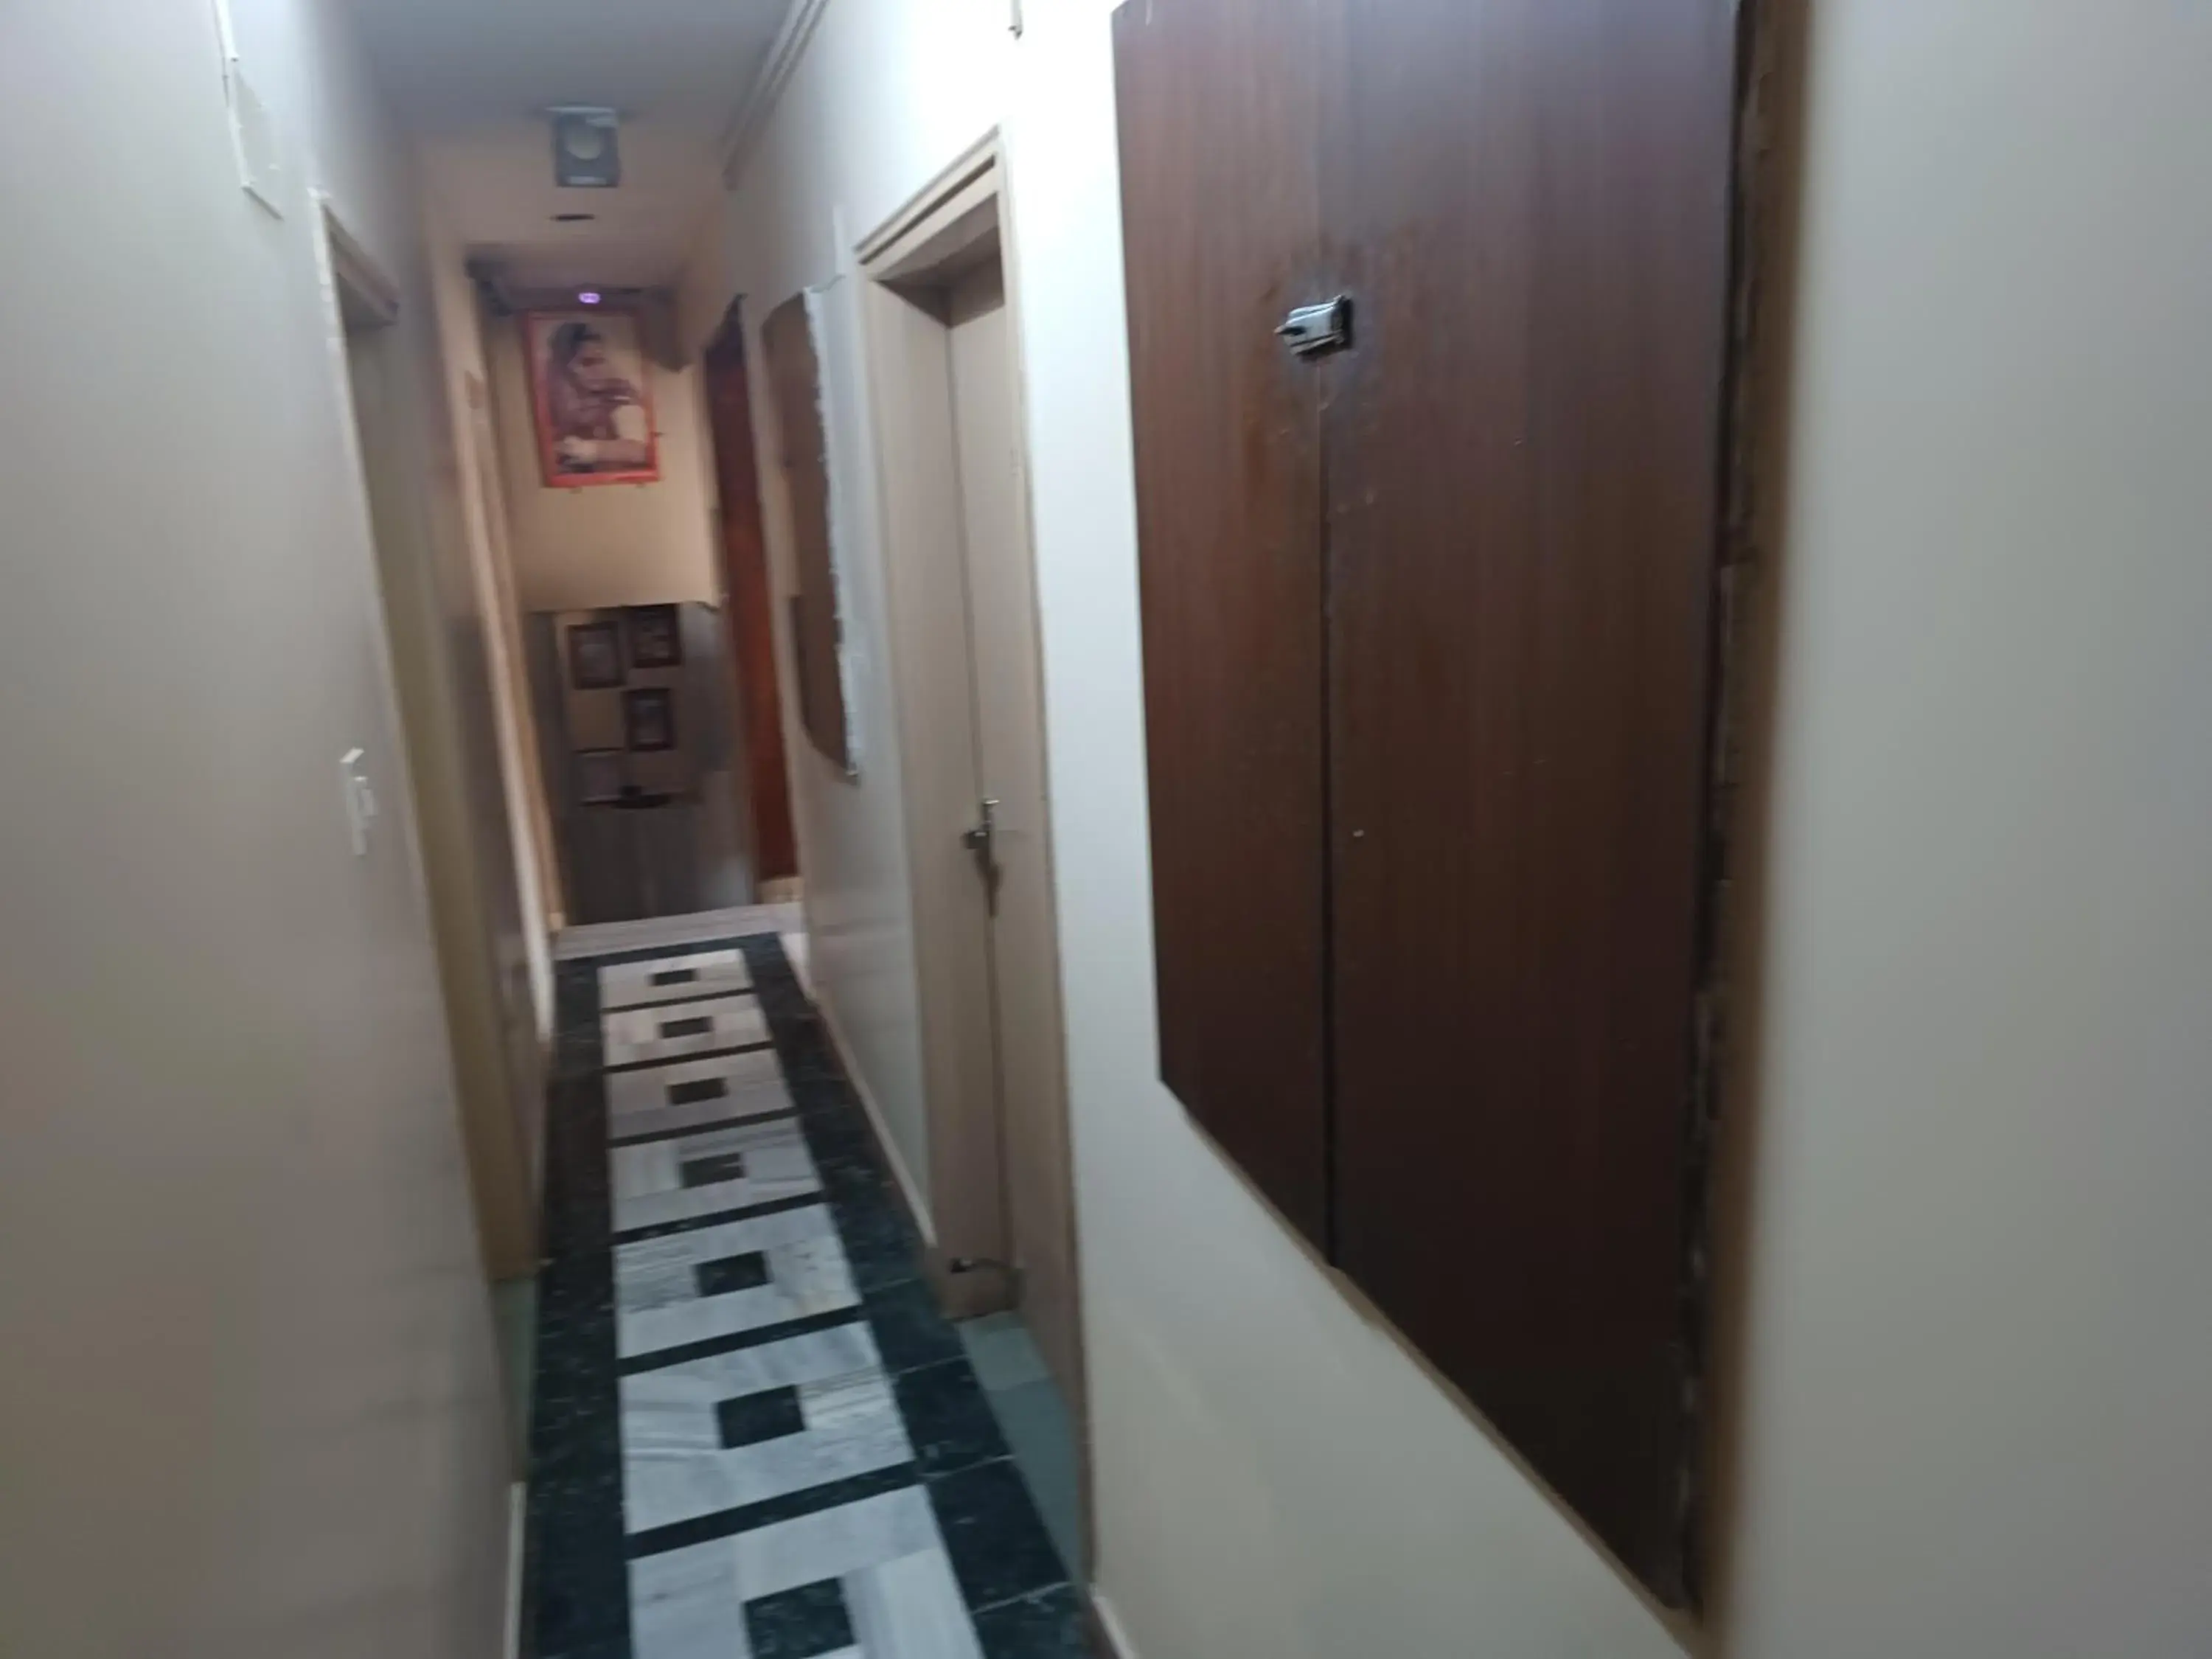 Lobby or reception, Bathroom in Kailash Hotel